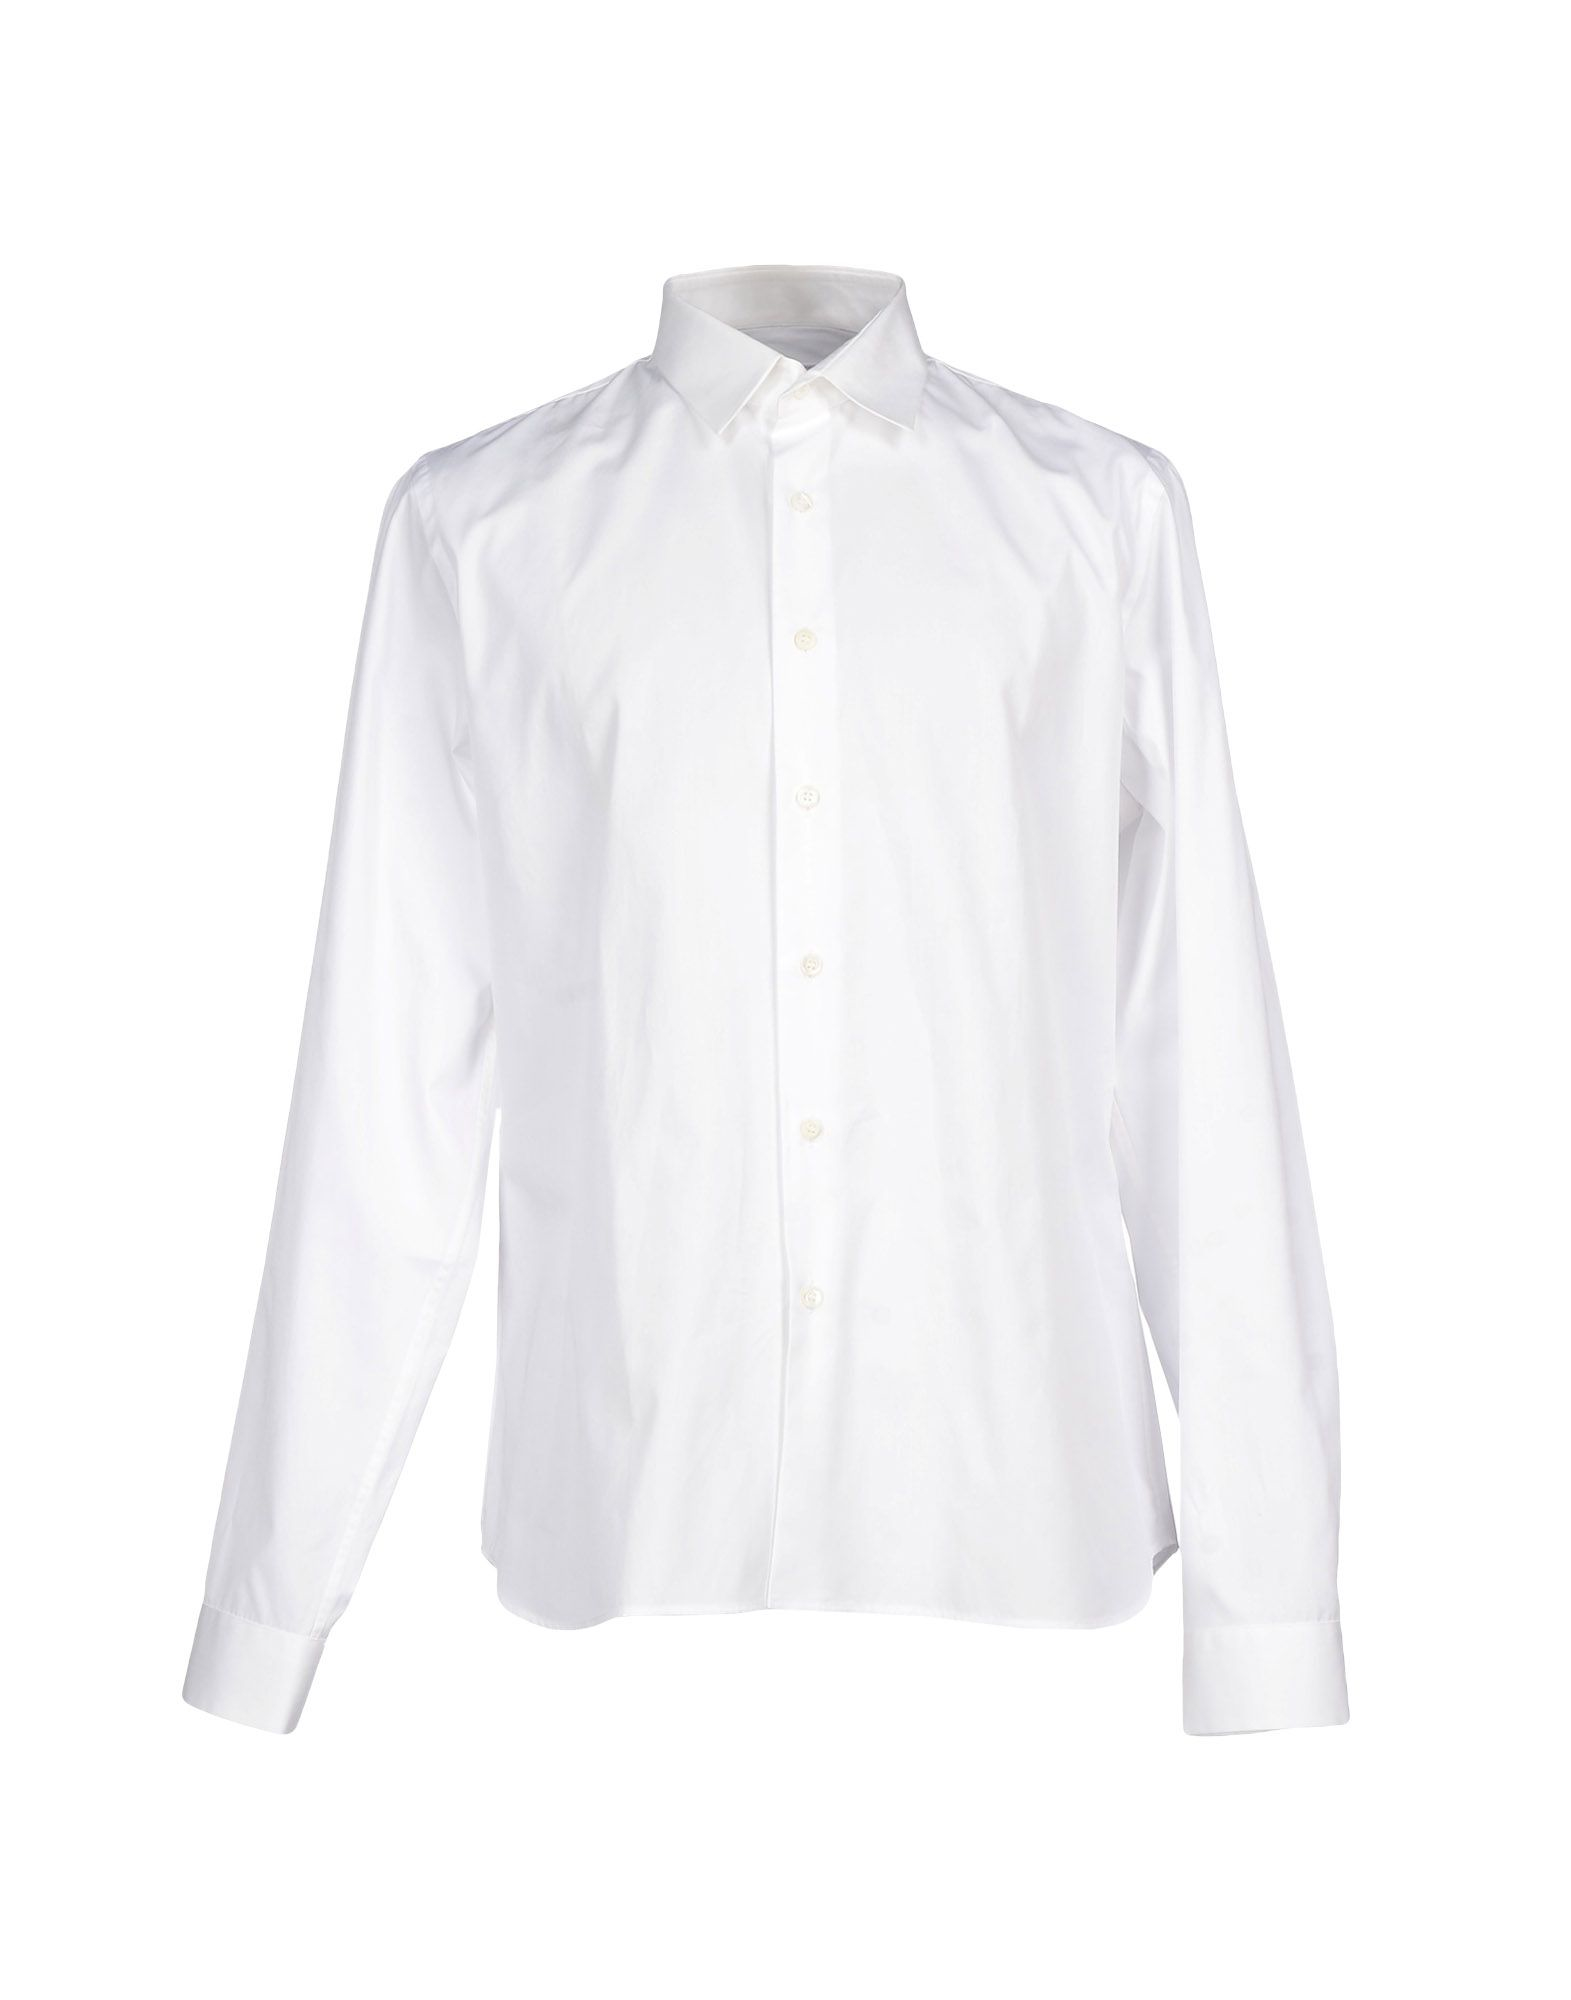 Lyst - Prada Shirt in White for Men